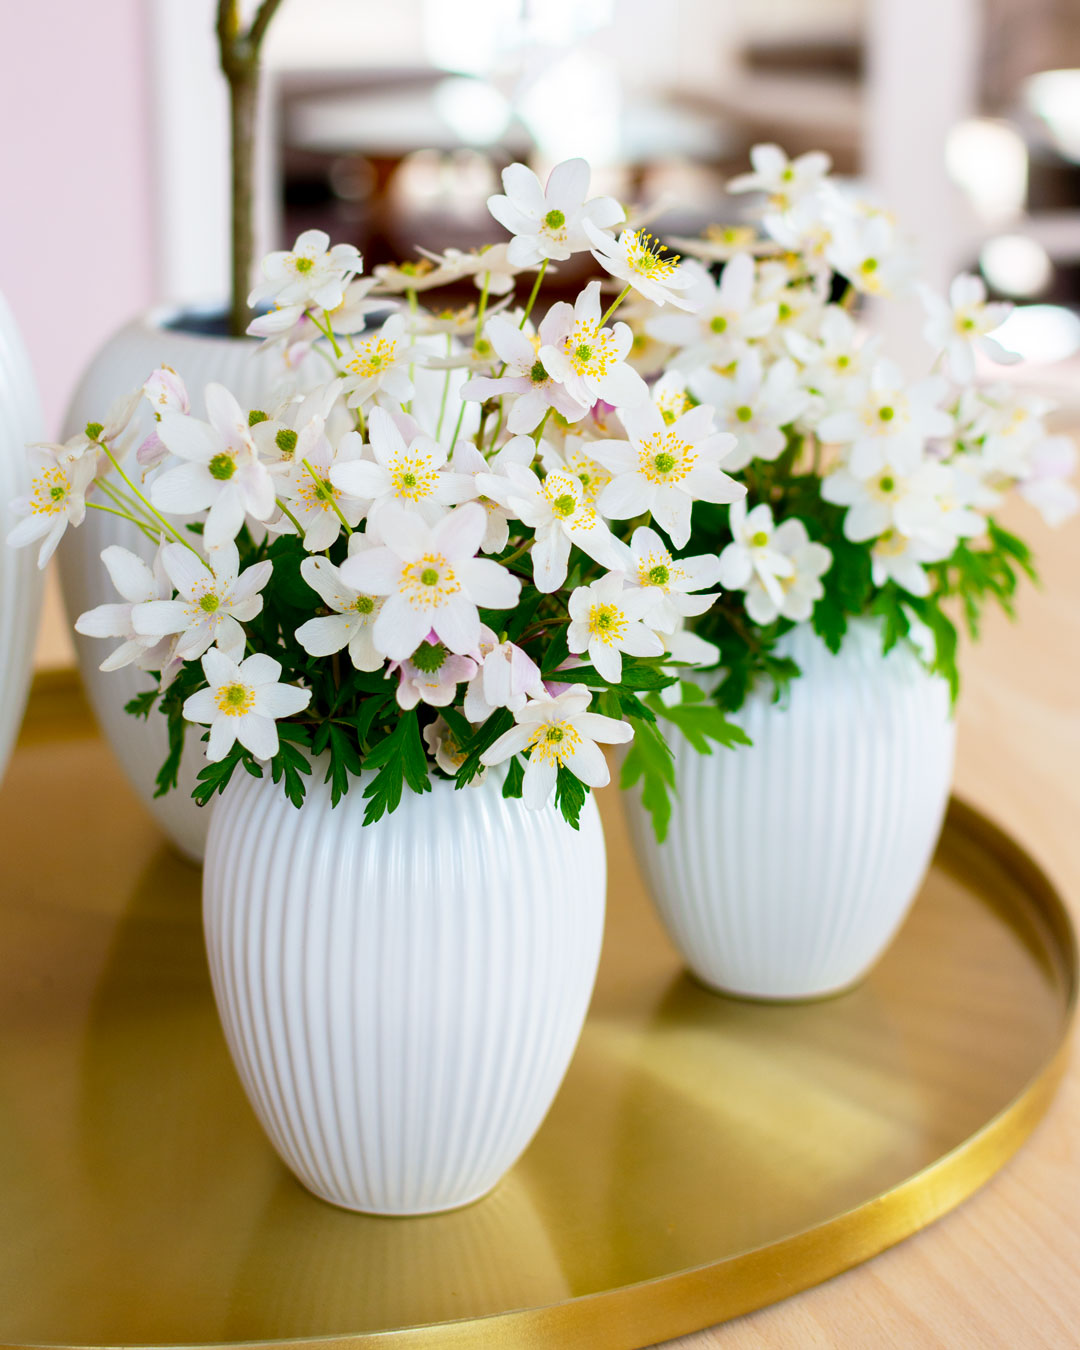 2 Små hvide vaser fra Michael Andersen Keramik Model 4767 i 12 cm med hvide anemoner på messingbakke på spisestuebord af lyst træ